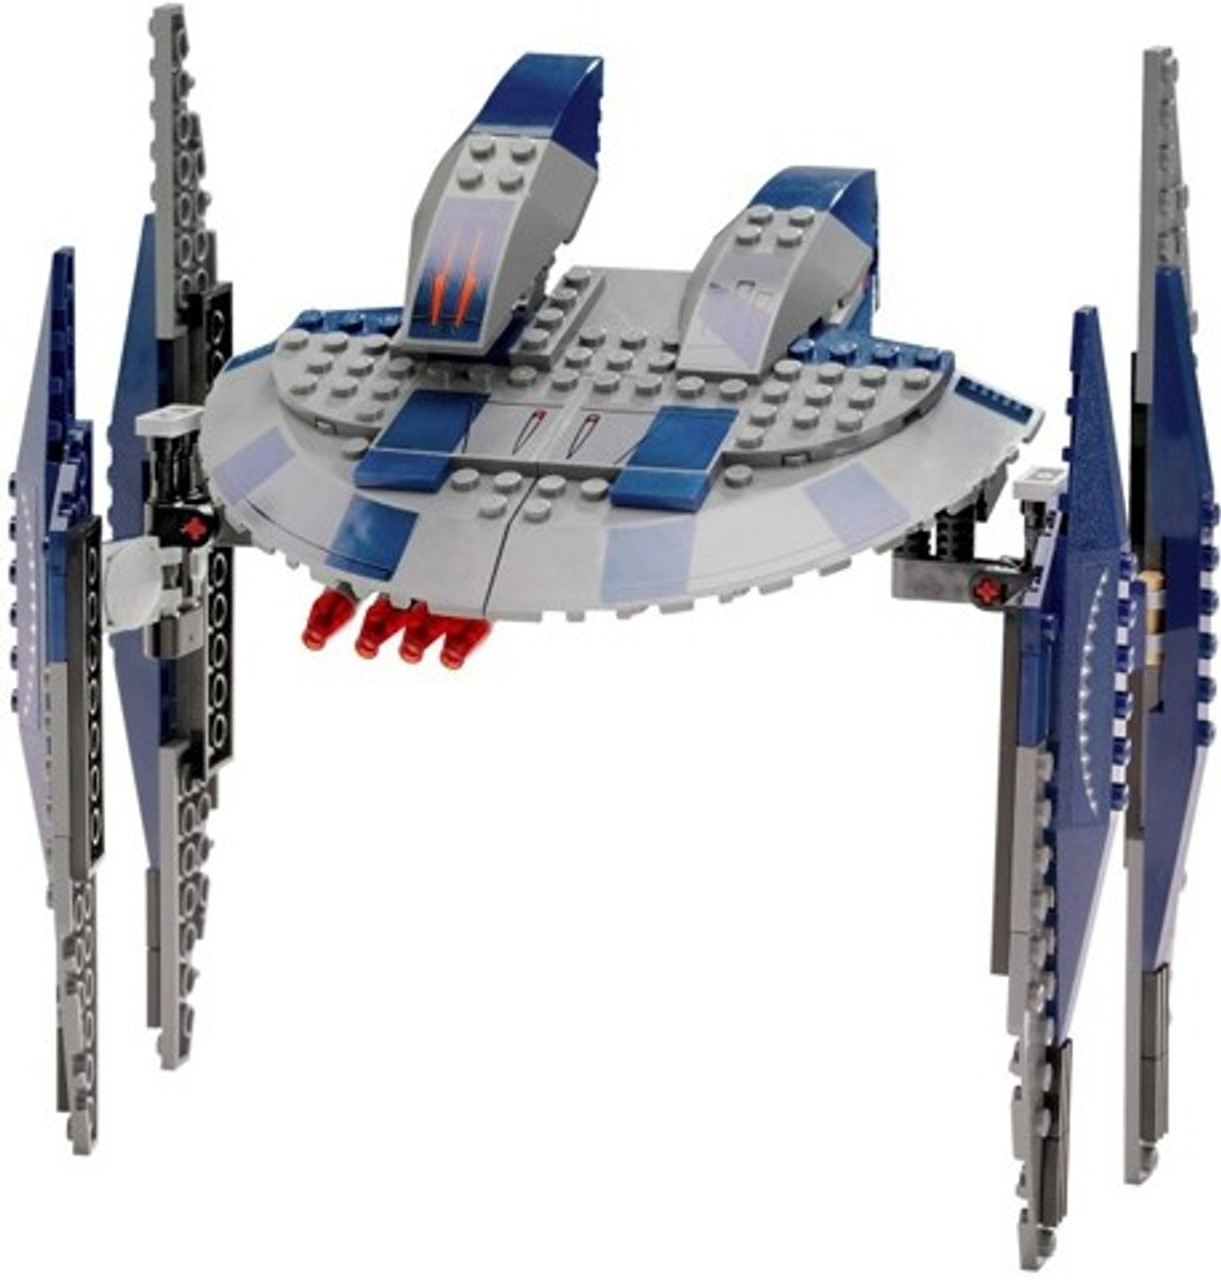 star wars lego droid ship